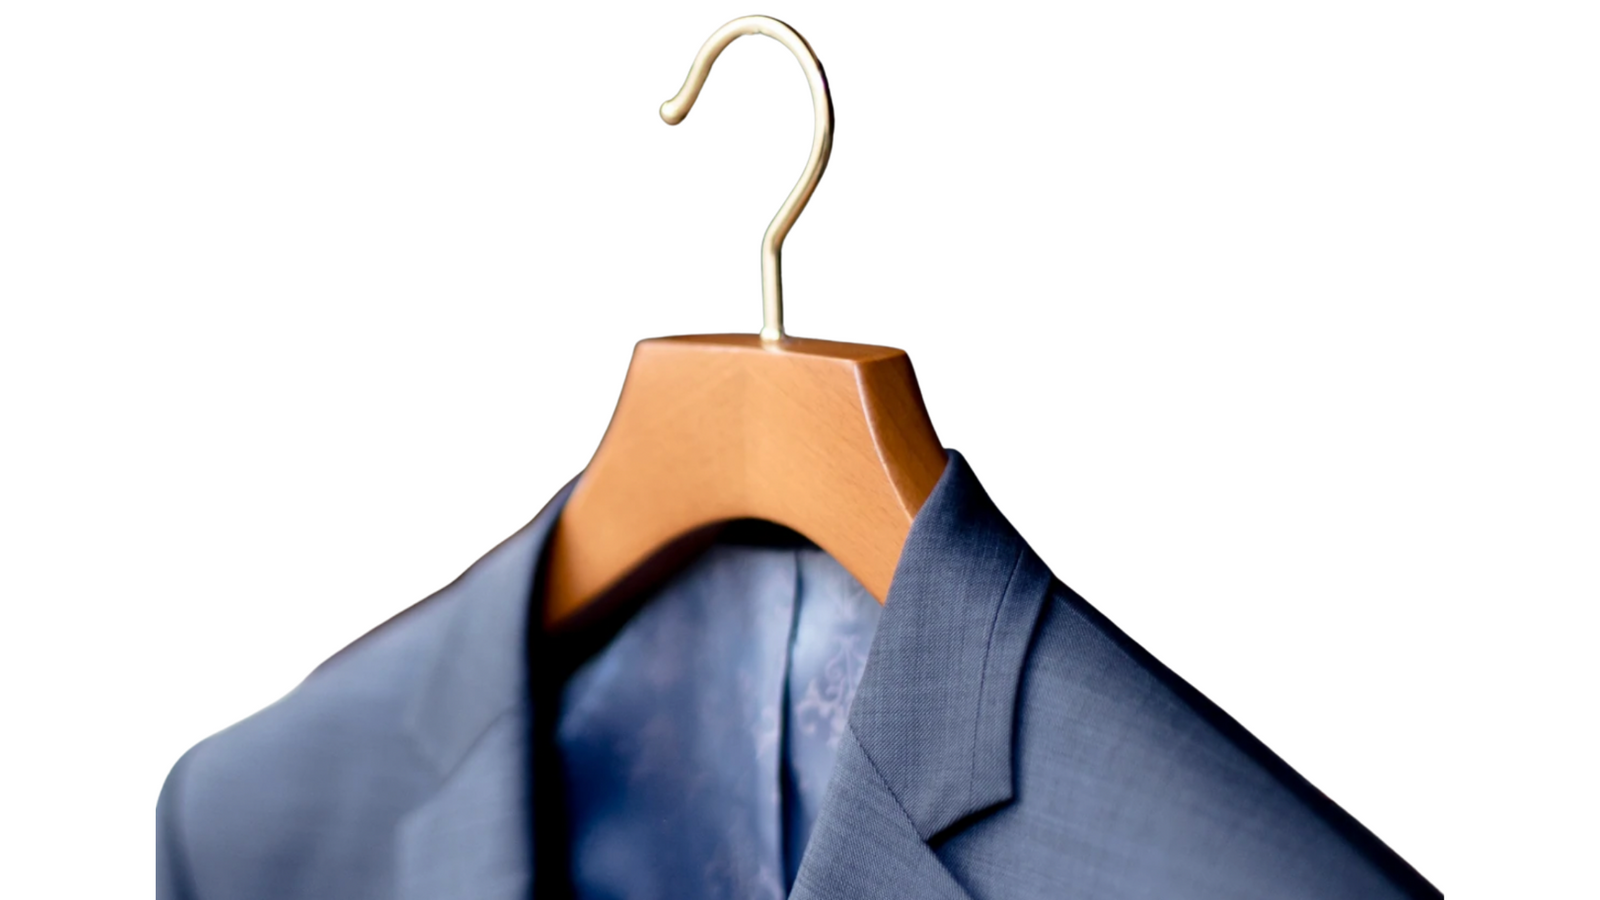 Butler Luxus  Luxuriöse Kleiderbügel für den Profi von heute